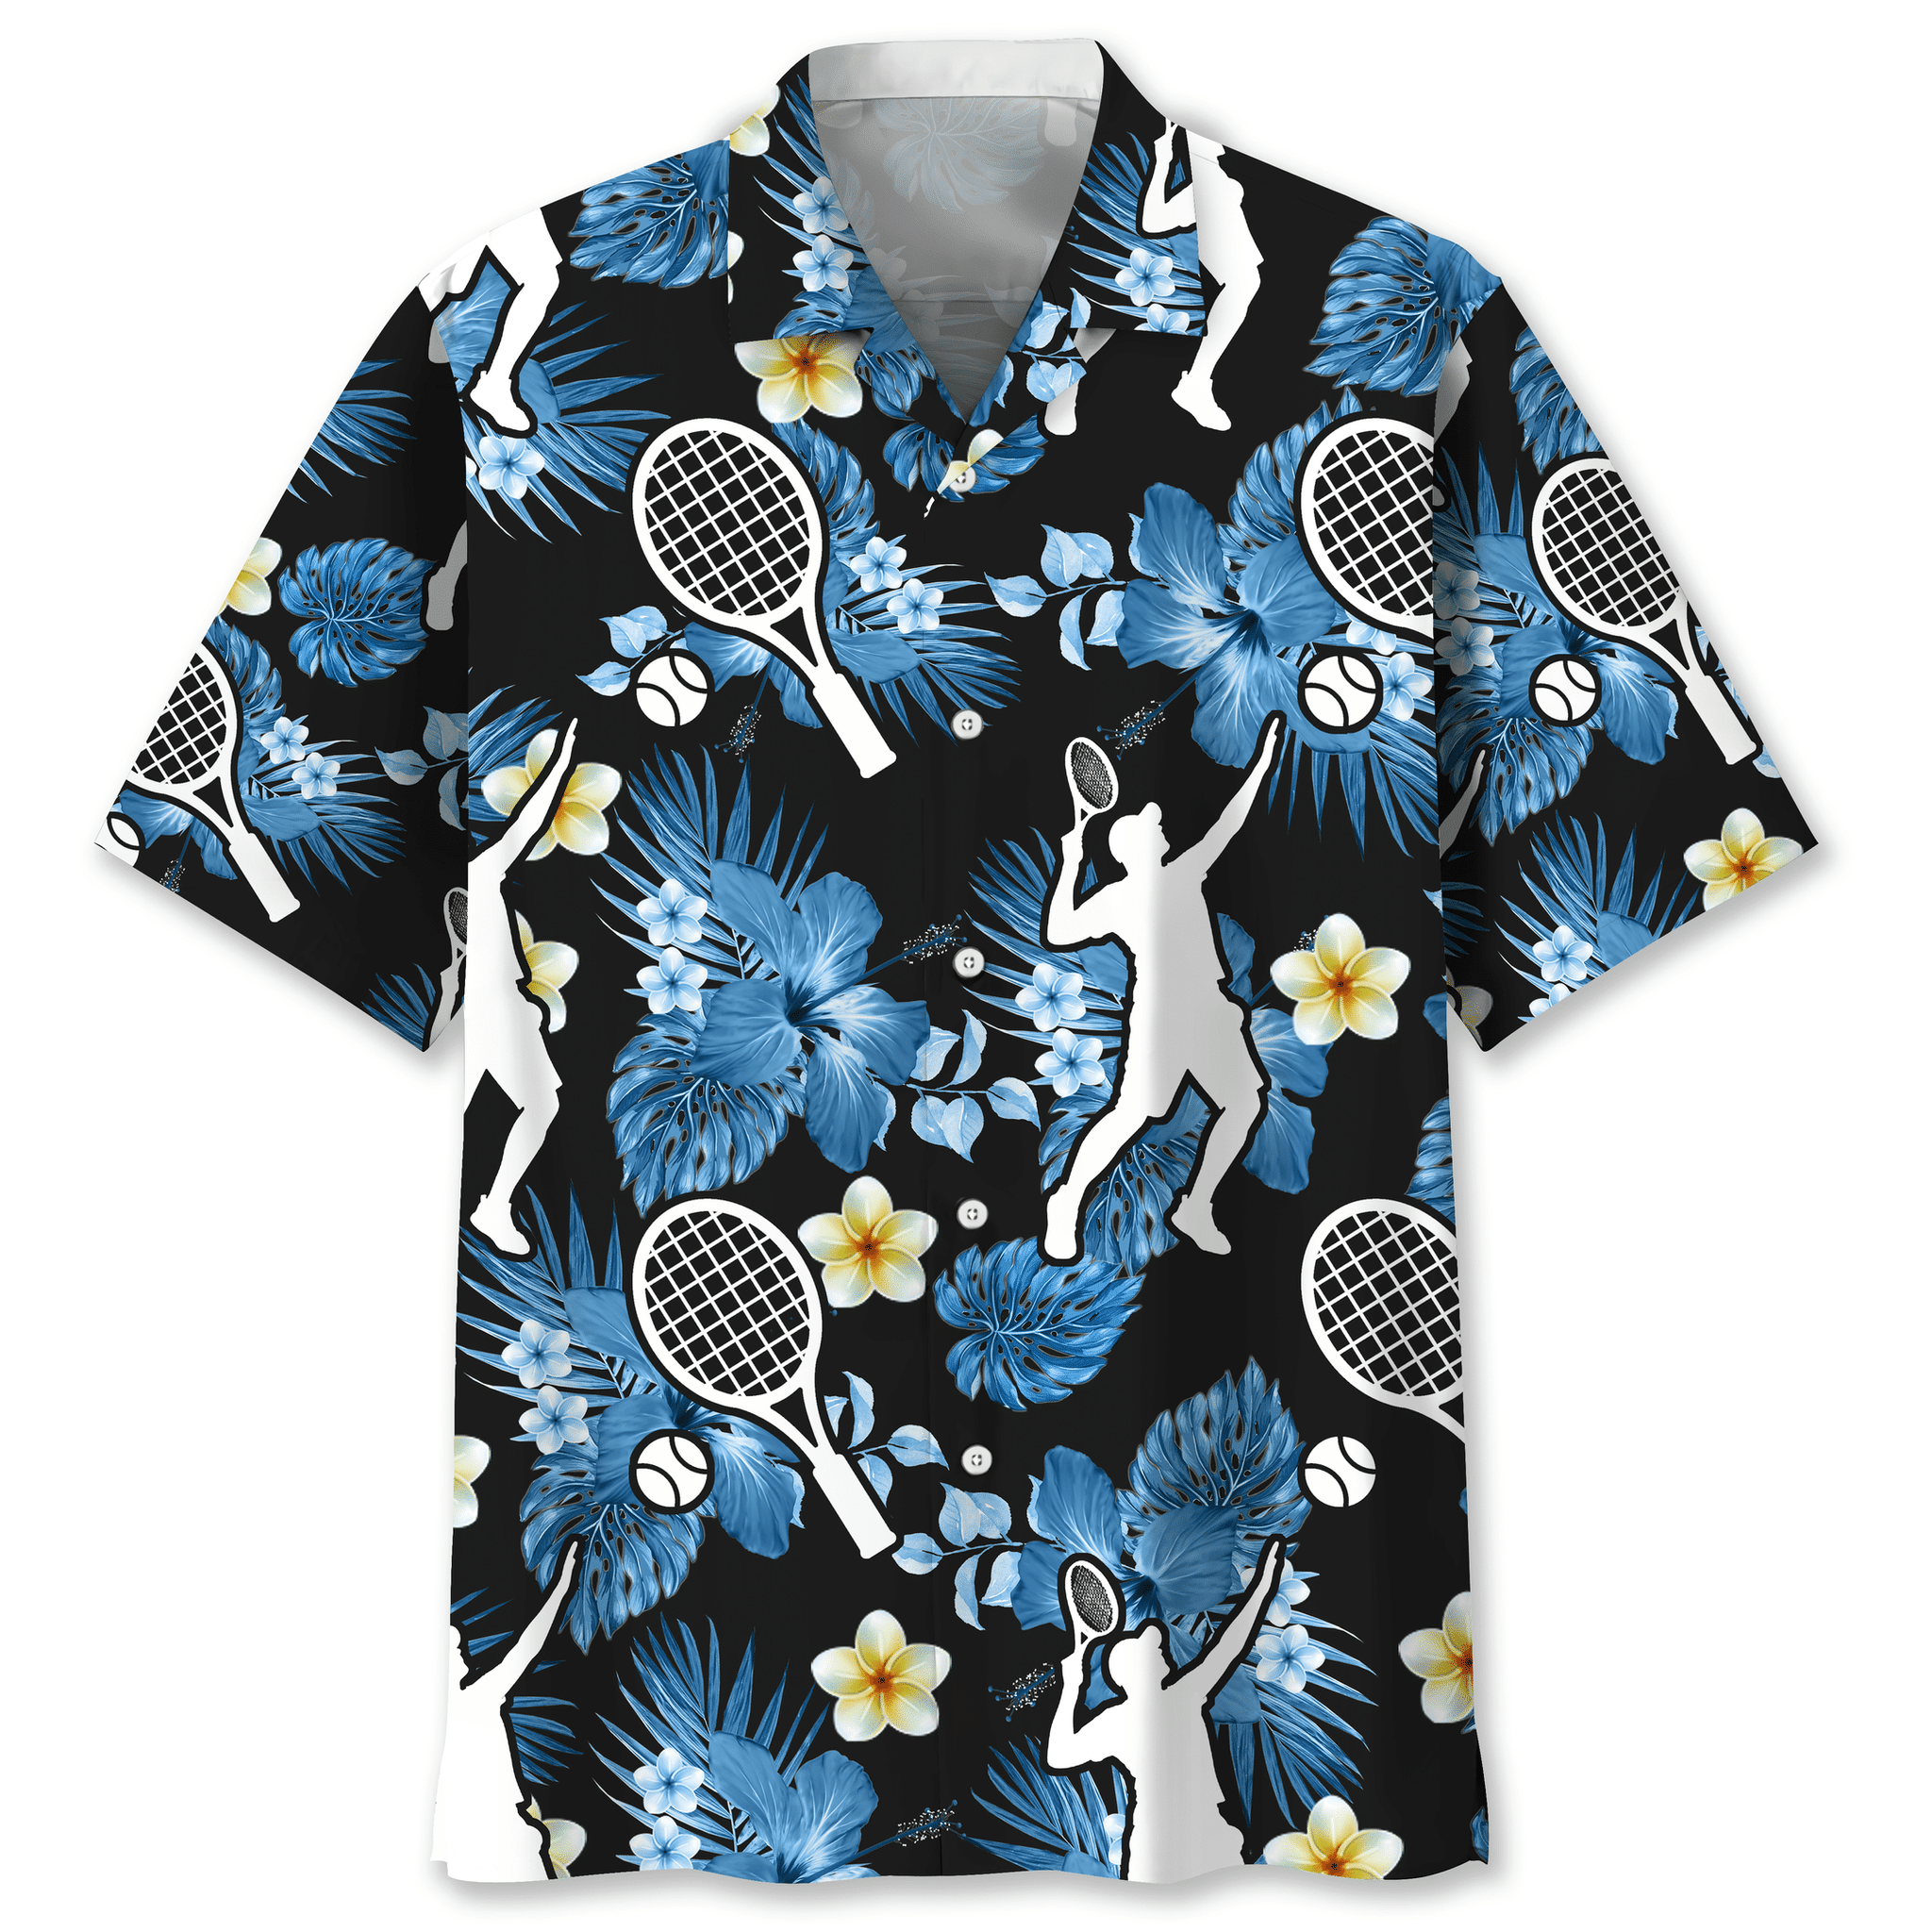 Tennis nature Hawaiian shirt and short – LIMITED EDITION